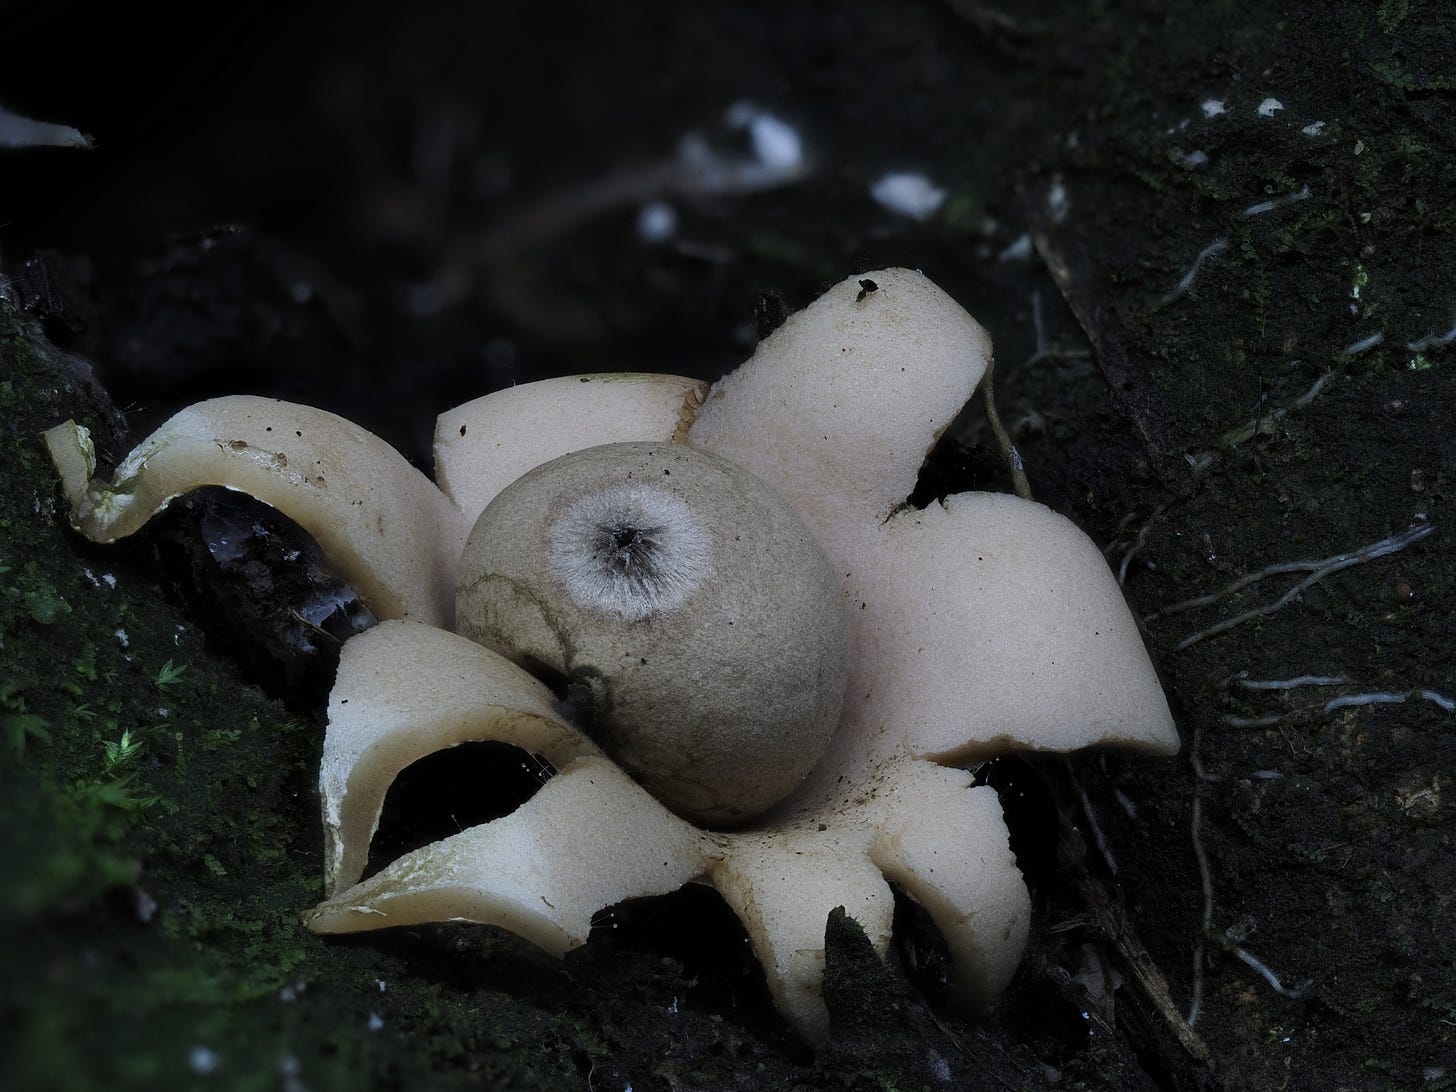 earthstar mushroom